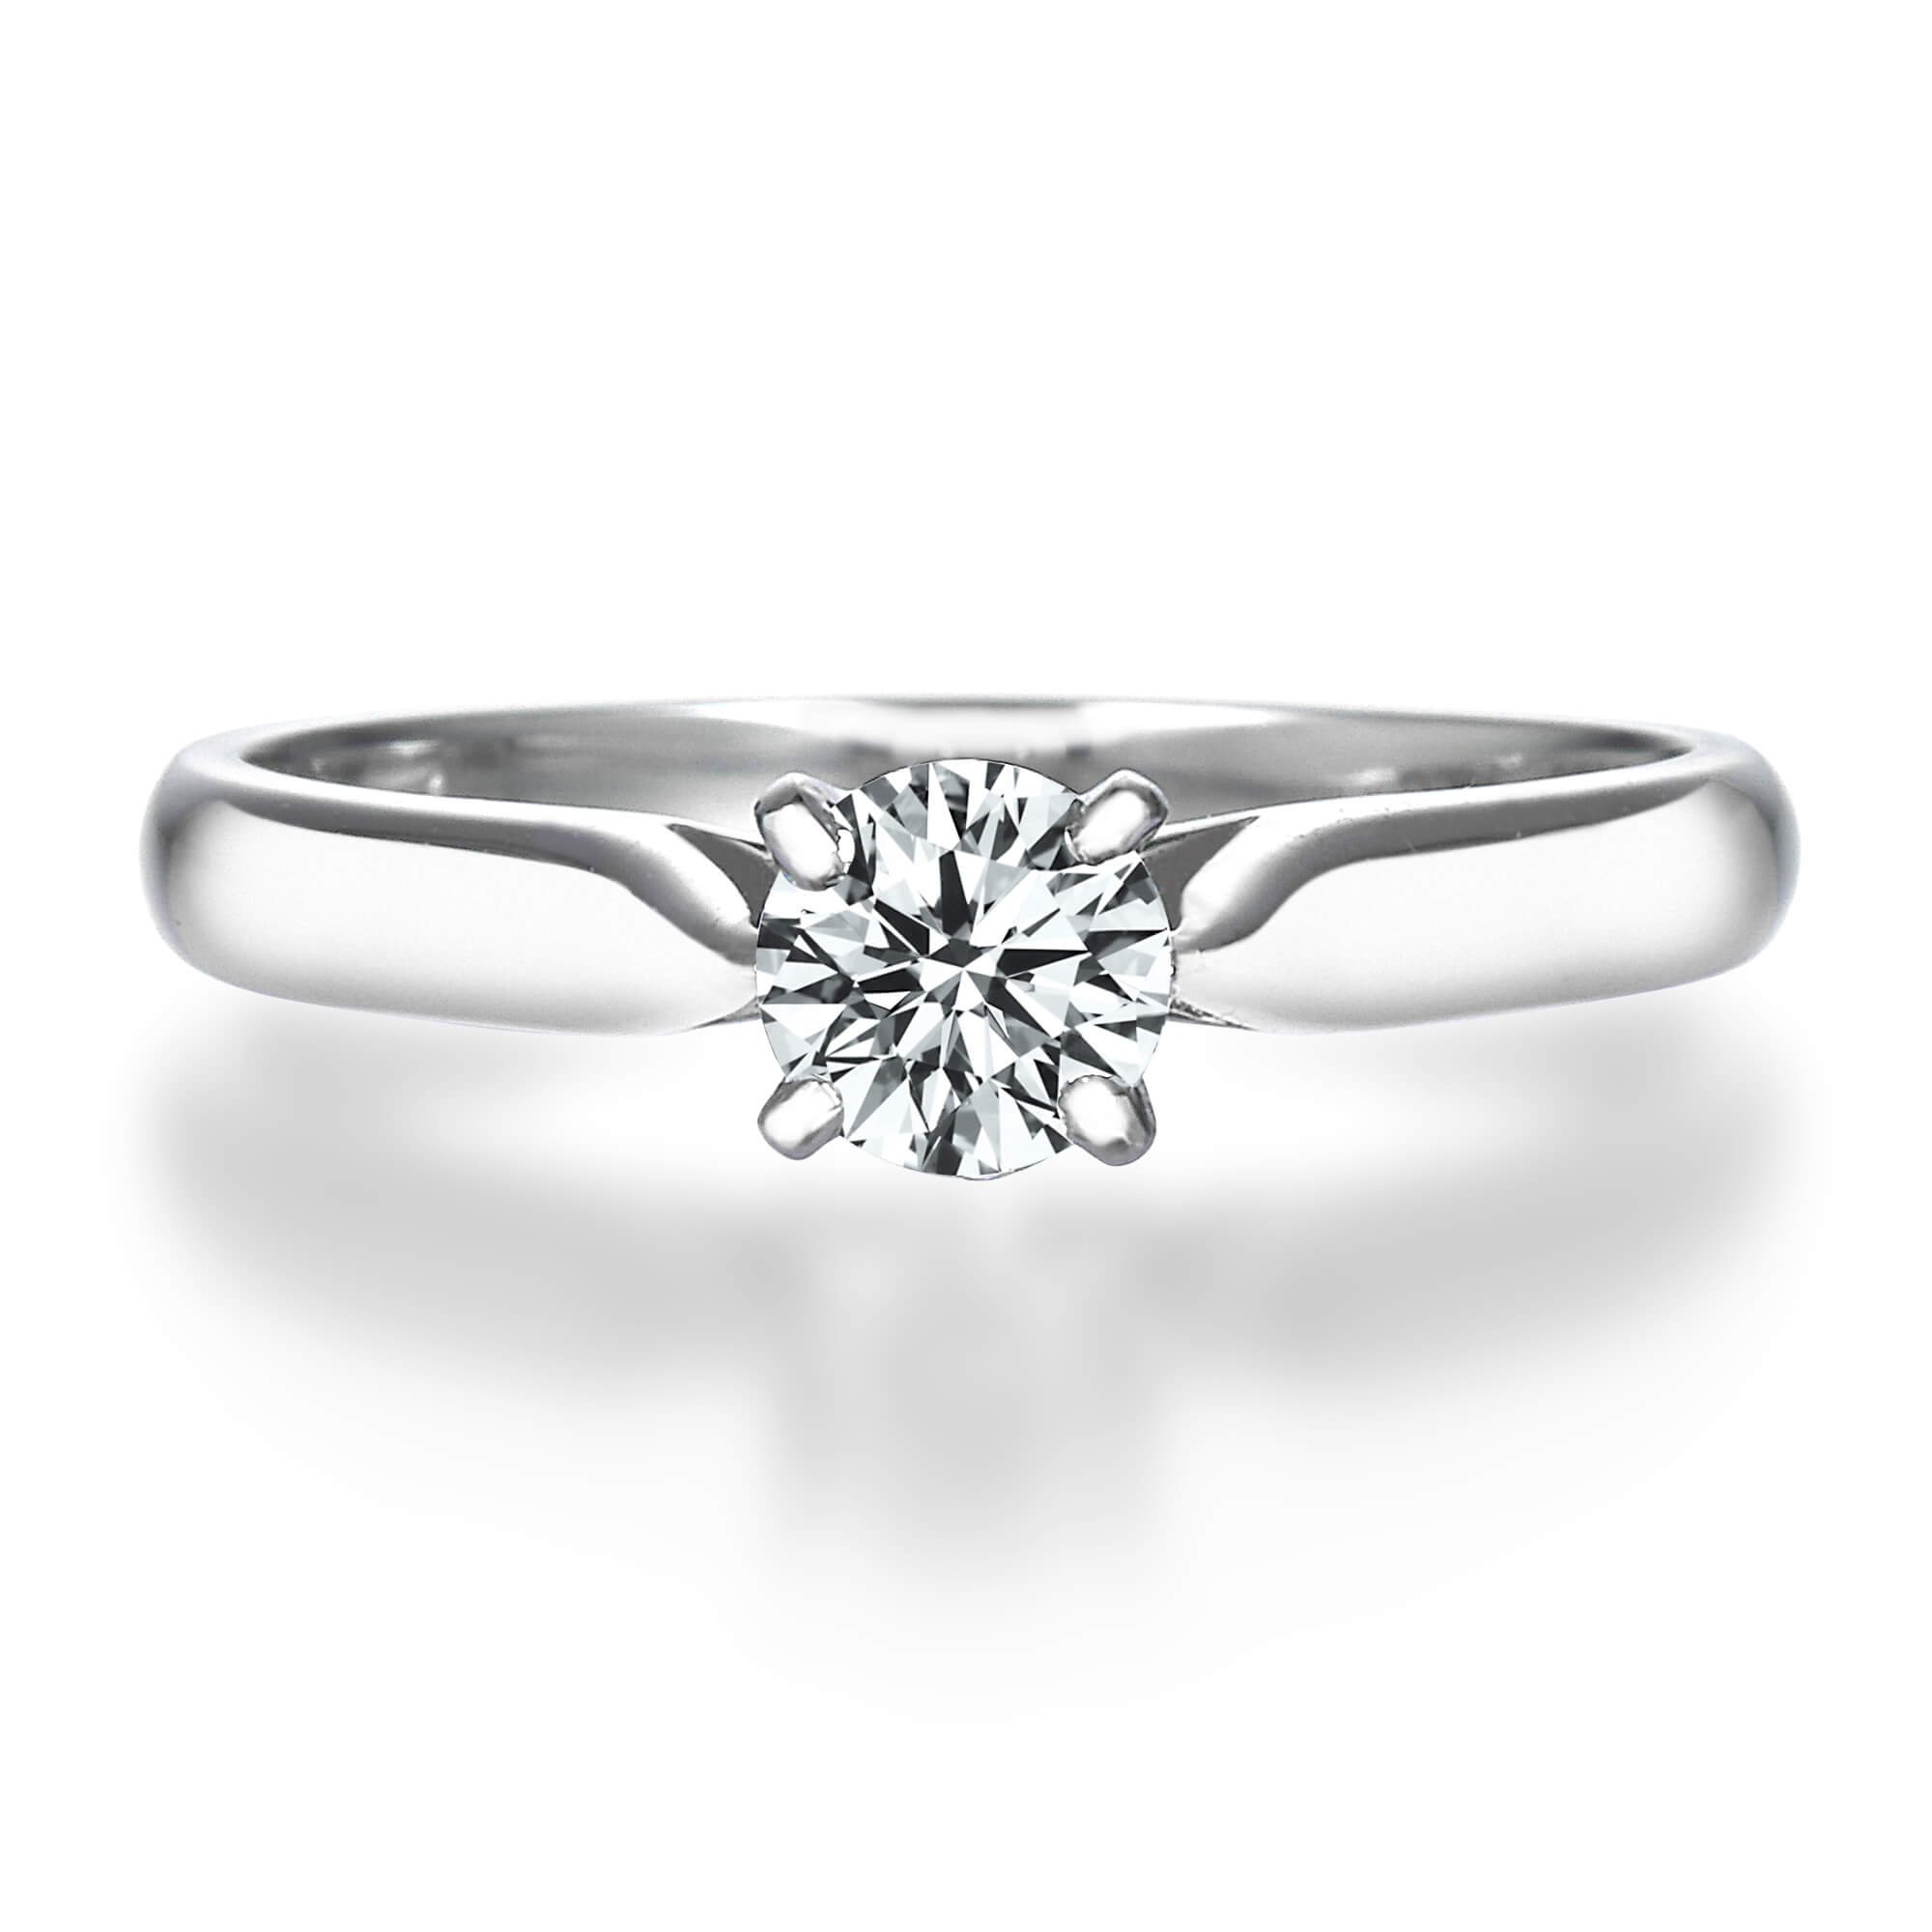 4本爪テーパードラウンドダイヤモンドリング 結婚指輪 婚約指輪のqdm